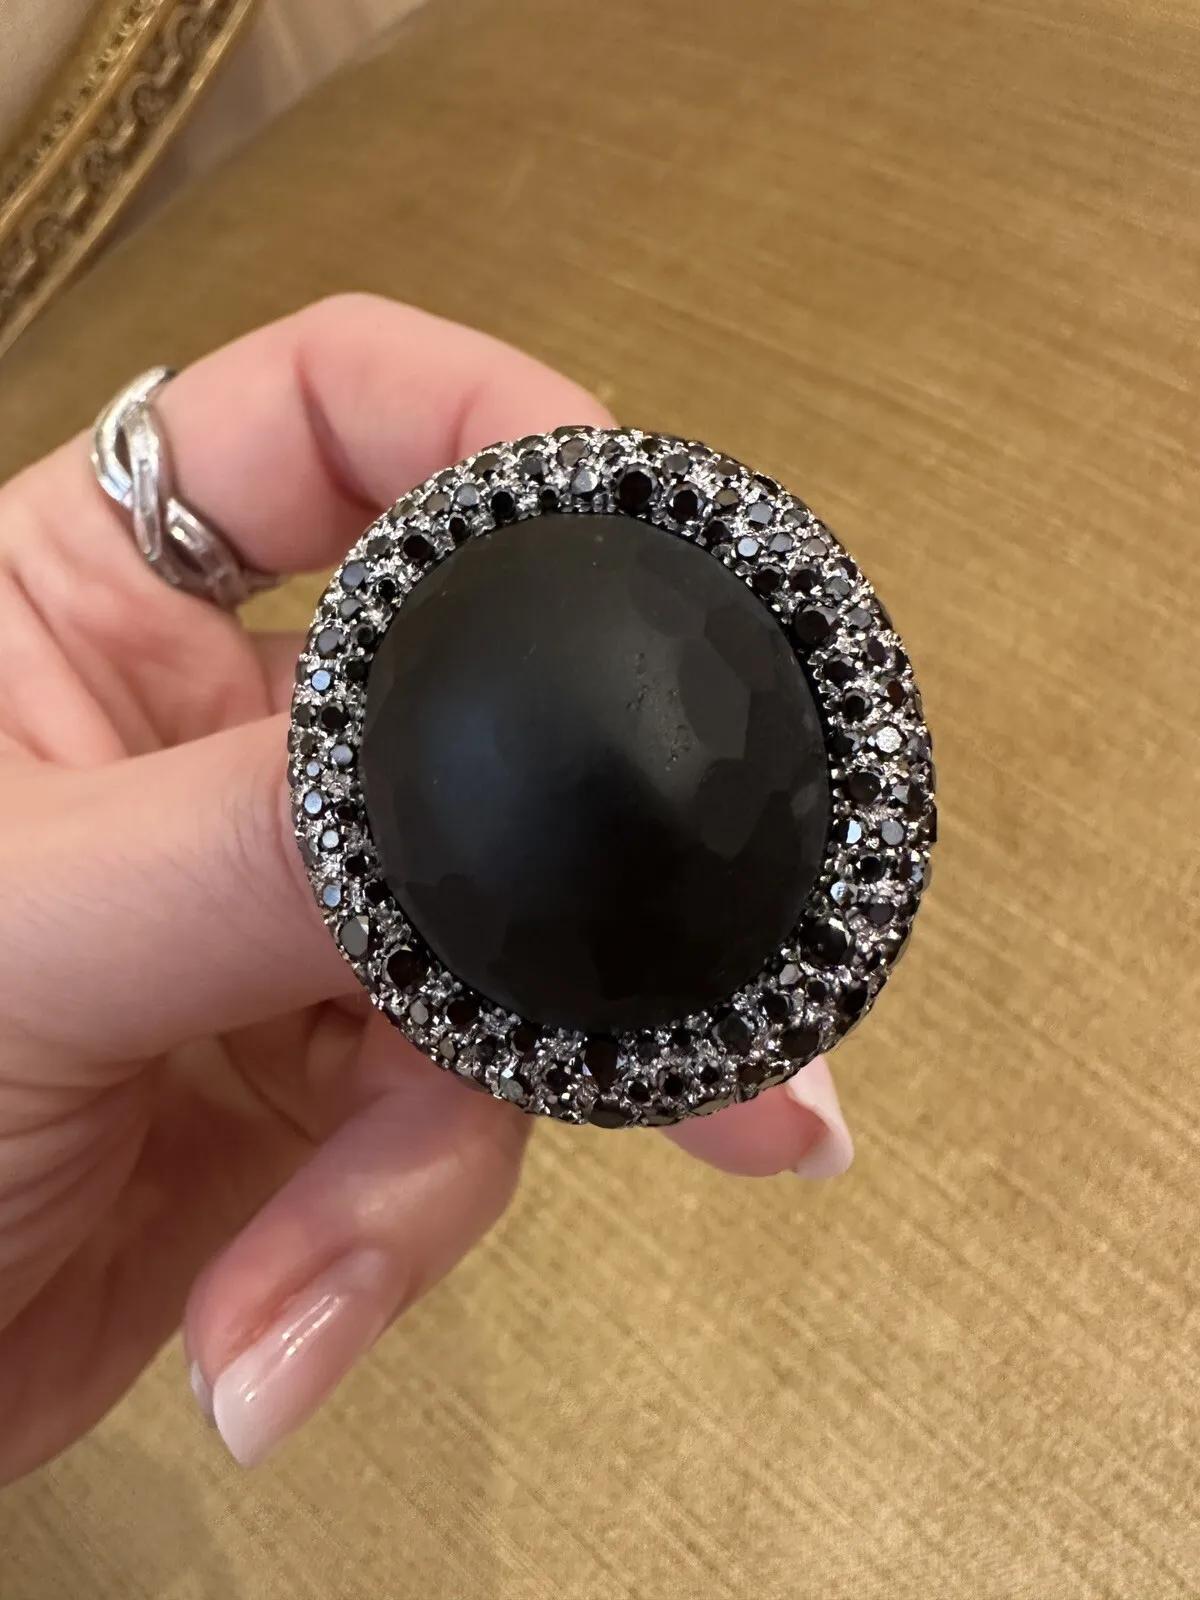 Schwarzer Diamant und Obsidian Statement-Ring aus 18k Weißgold

Großer Ring aus Obsidian und schwarzen Diamanten mit einem großen ovalen, mattschwarzen Obsidian, umgeben von runden schwarzen Diamanten, die in 18 Karat Weißgold gefasst sind.

Der